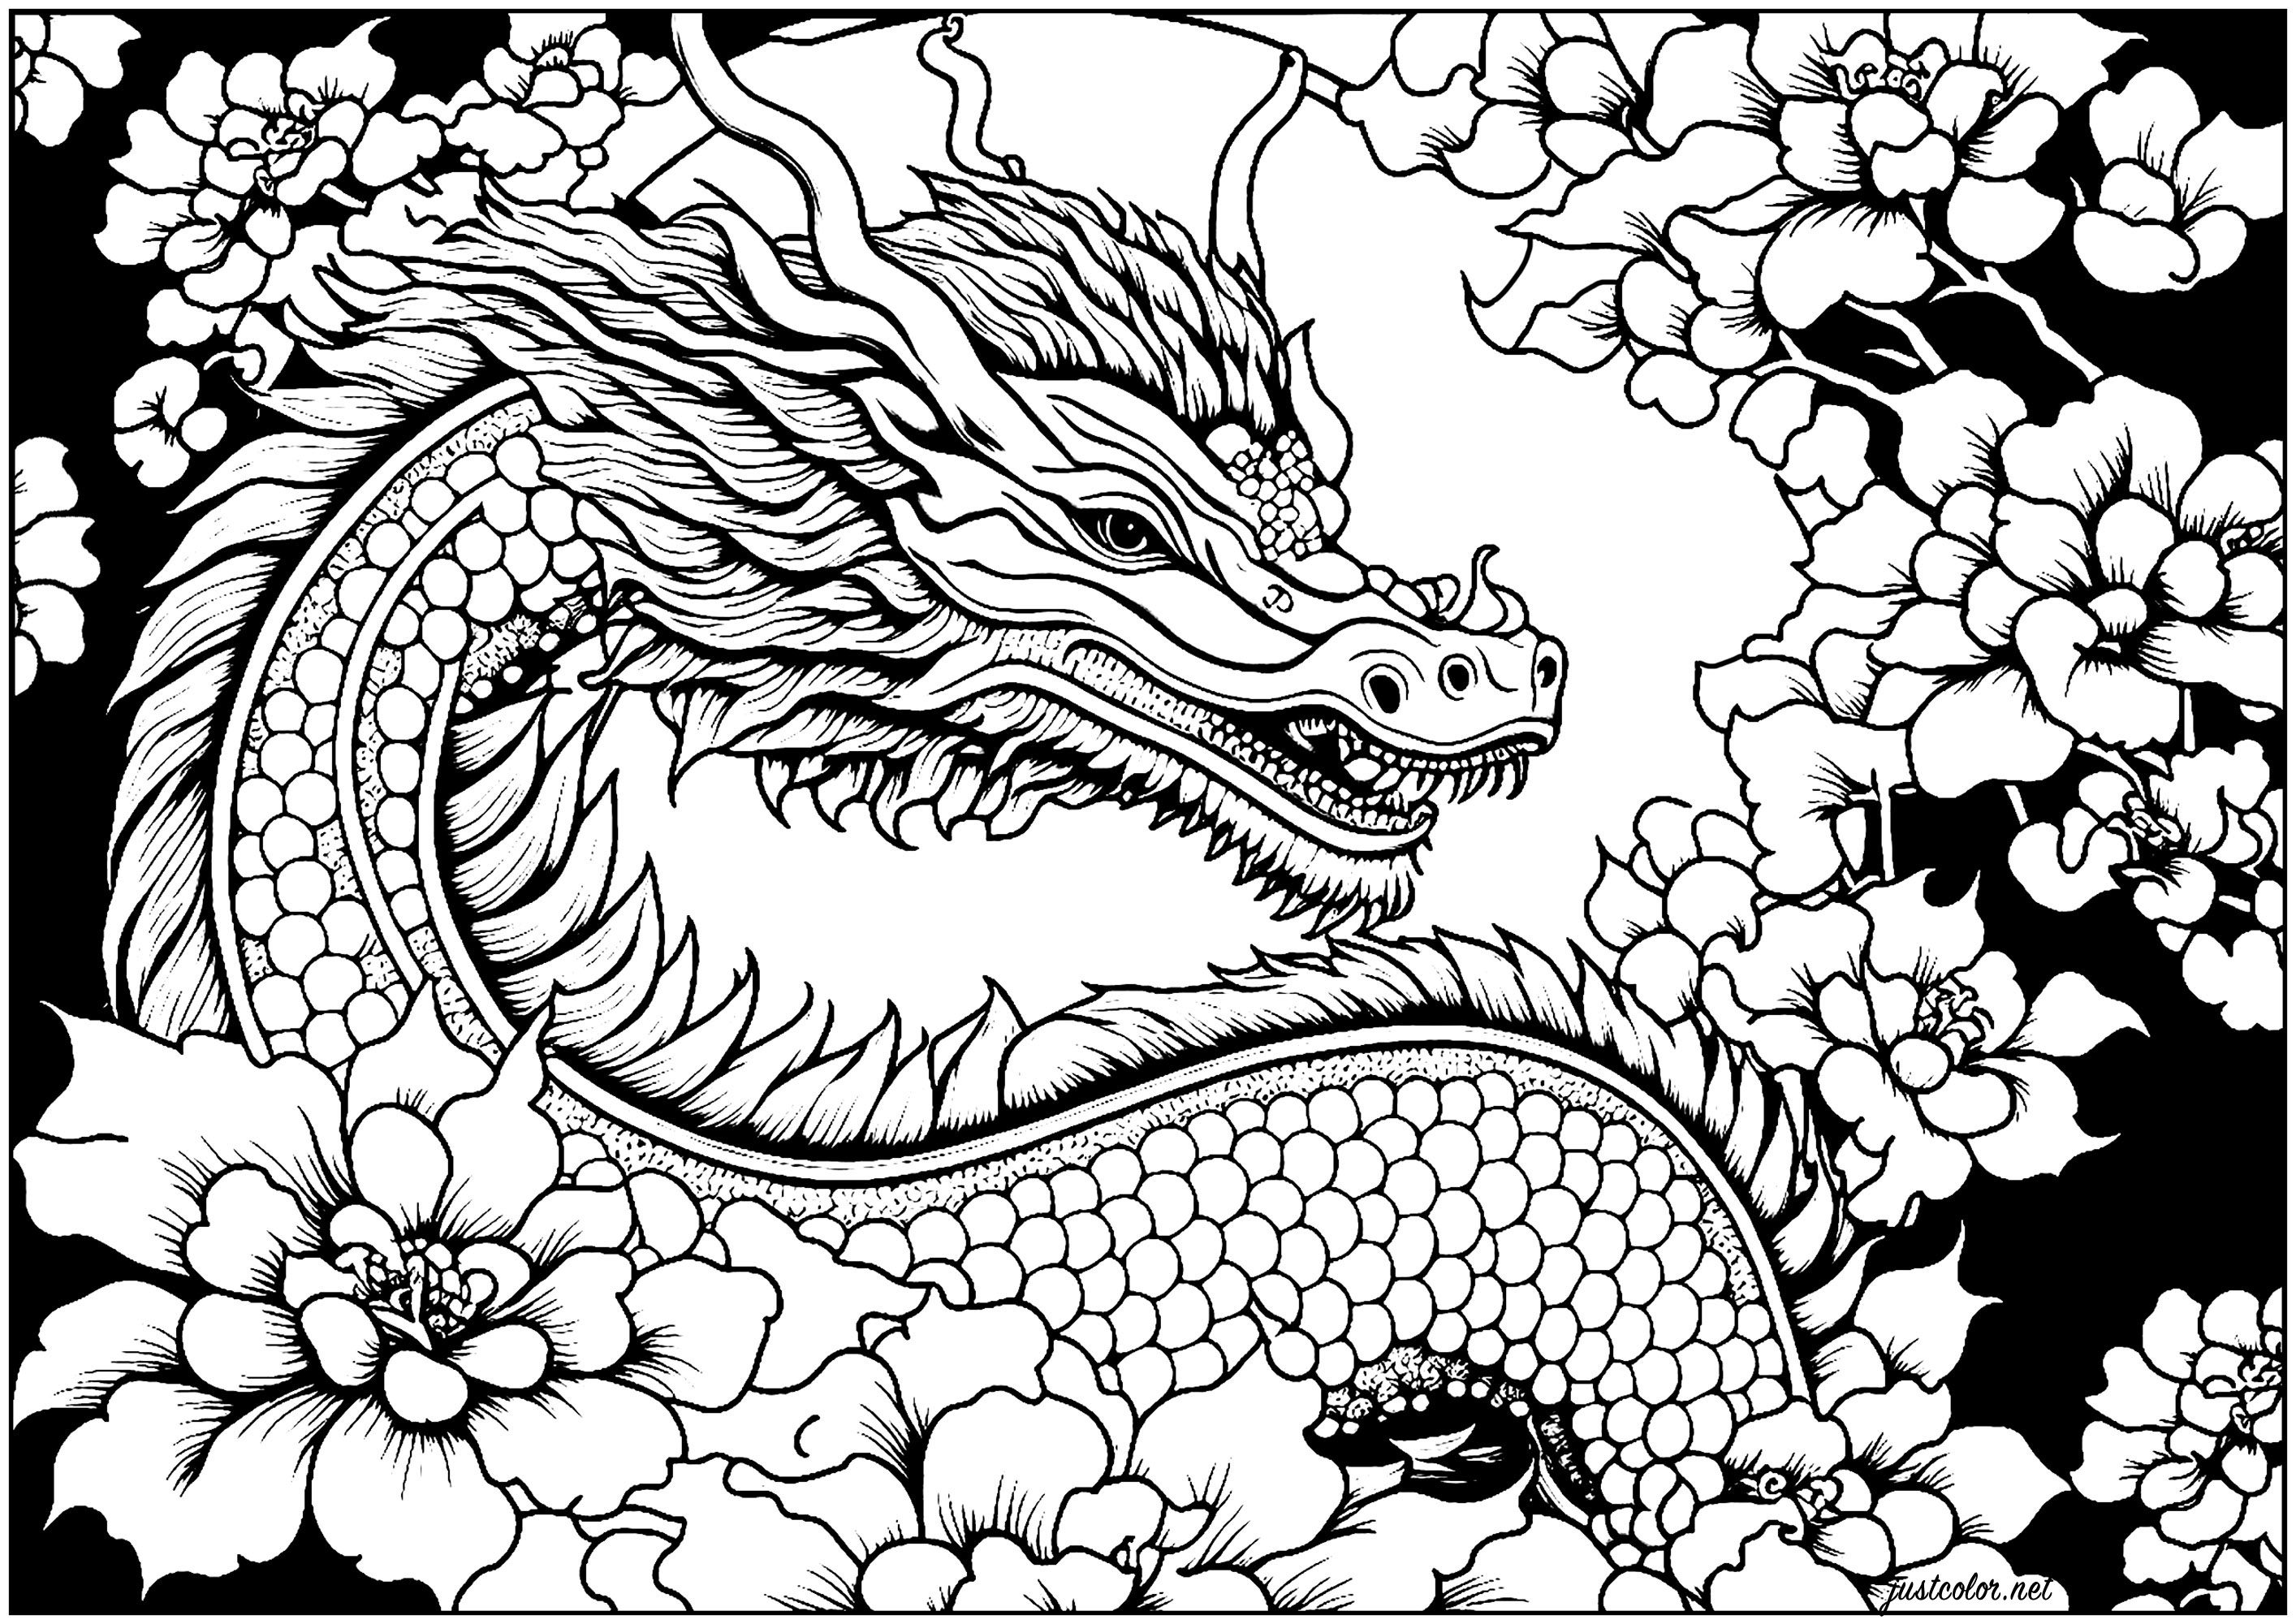 Bella colorazione con un drago circondato da fiori, con uno sfondo nero. Il drago è raffigurato in una postura possente, che gli conferisce una presenza maestosa, in contrasto con la morbidezza dei fiori ...